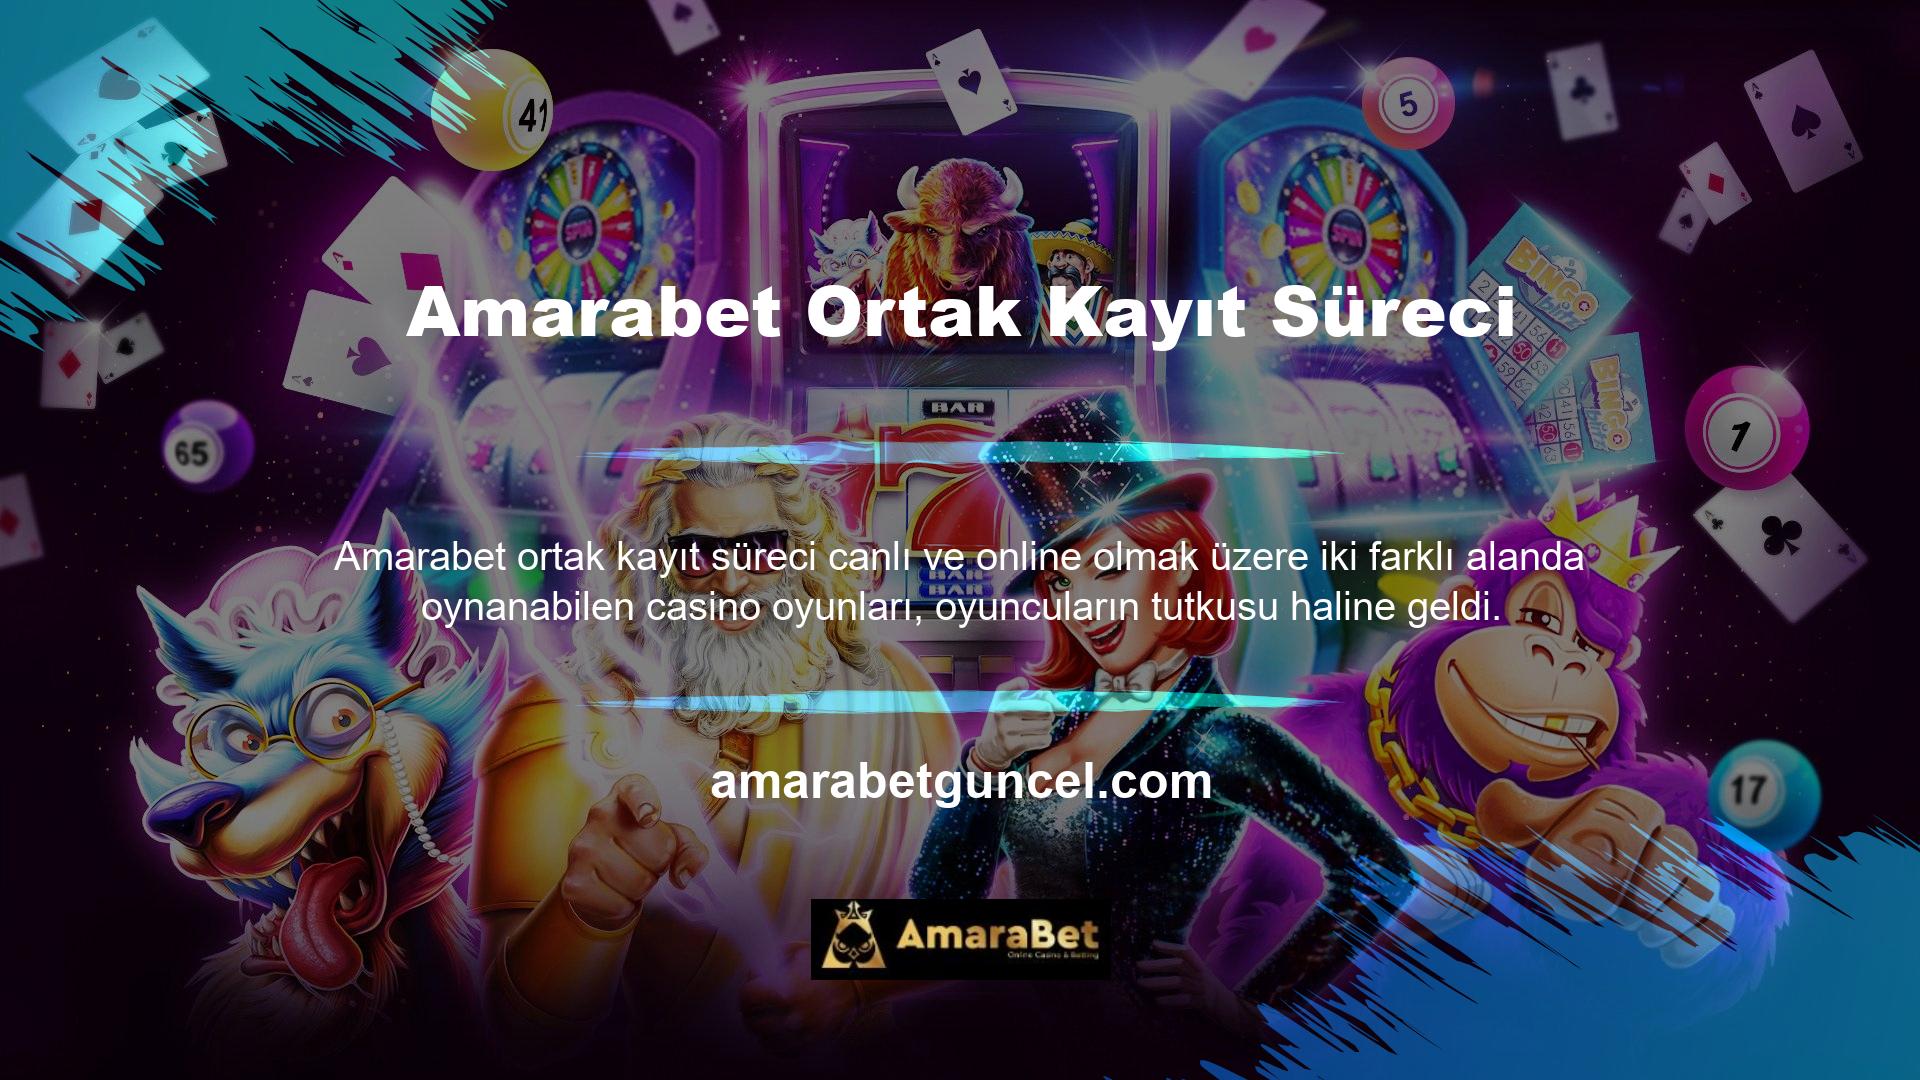 Amarabet bahis ve casino oyun siteleri, oyuncuların yatırım yapabilecekleri ve yatırımlarını büyütebilecekleri sitelerdir